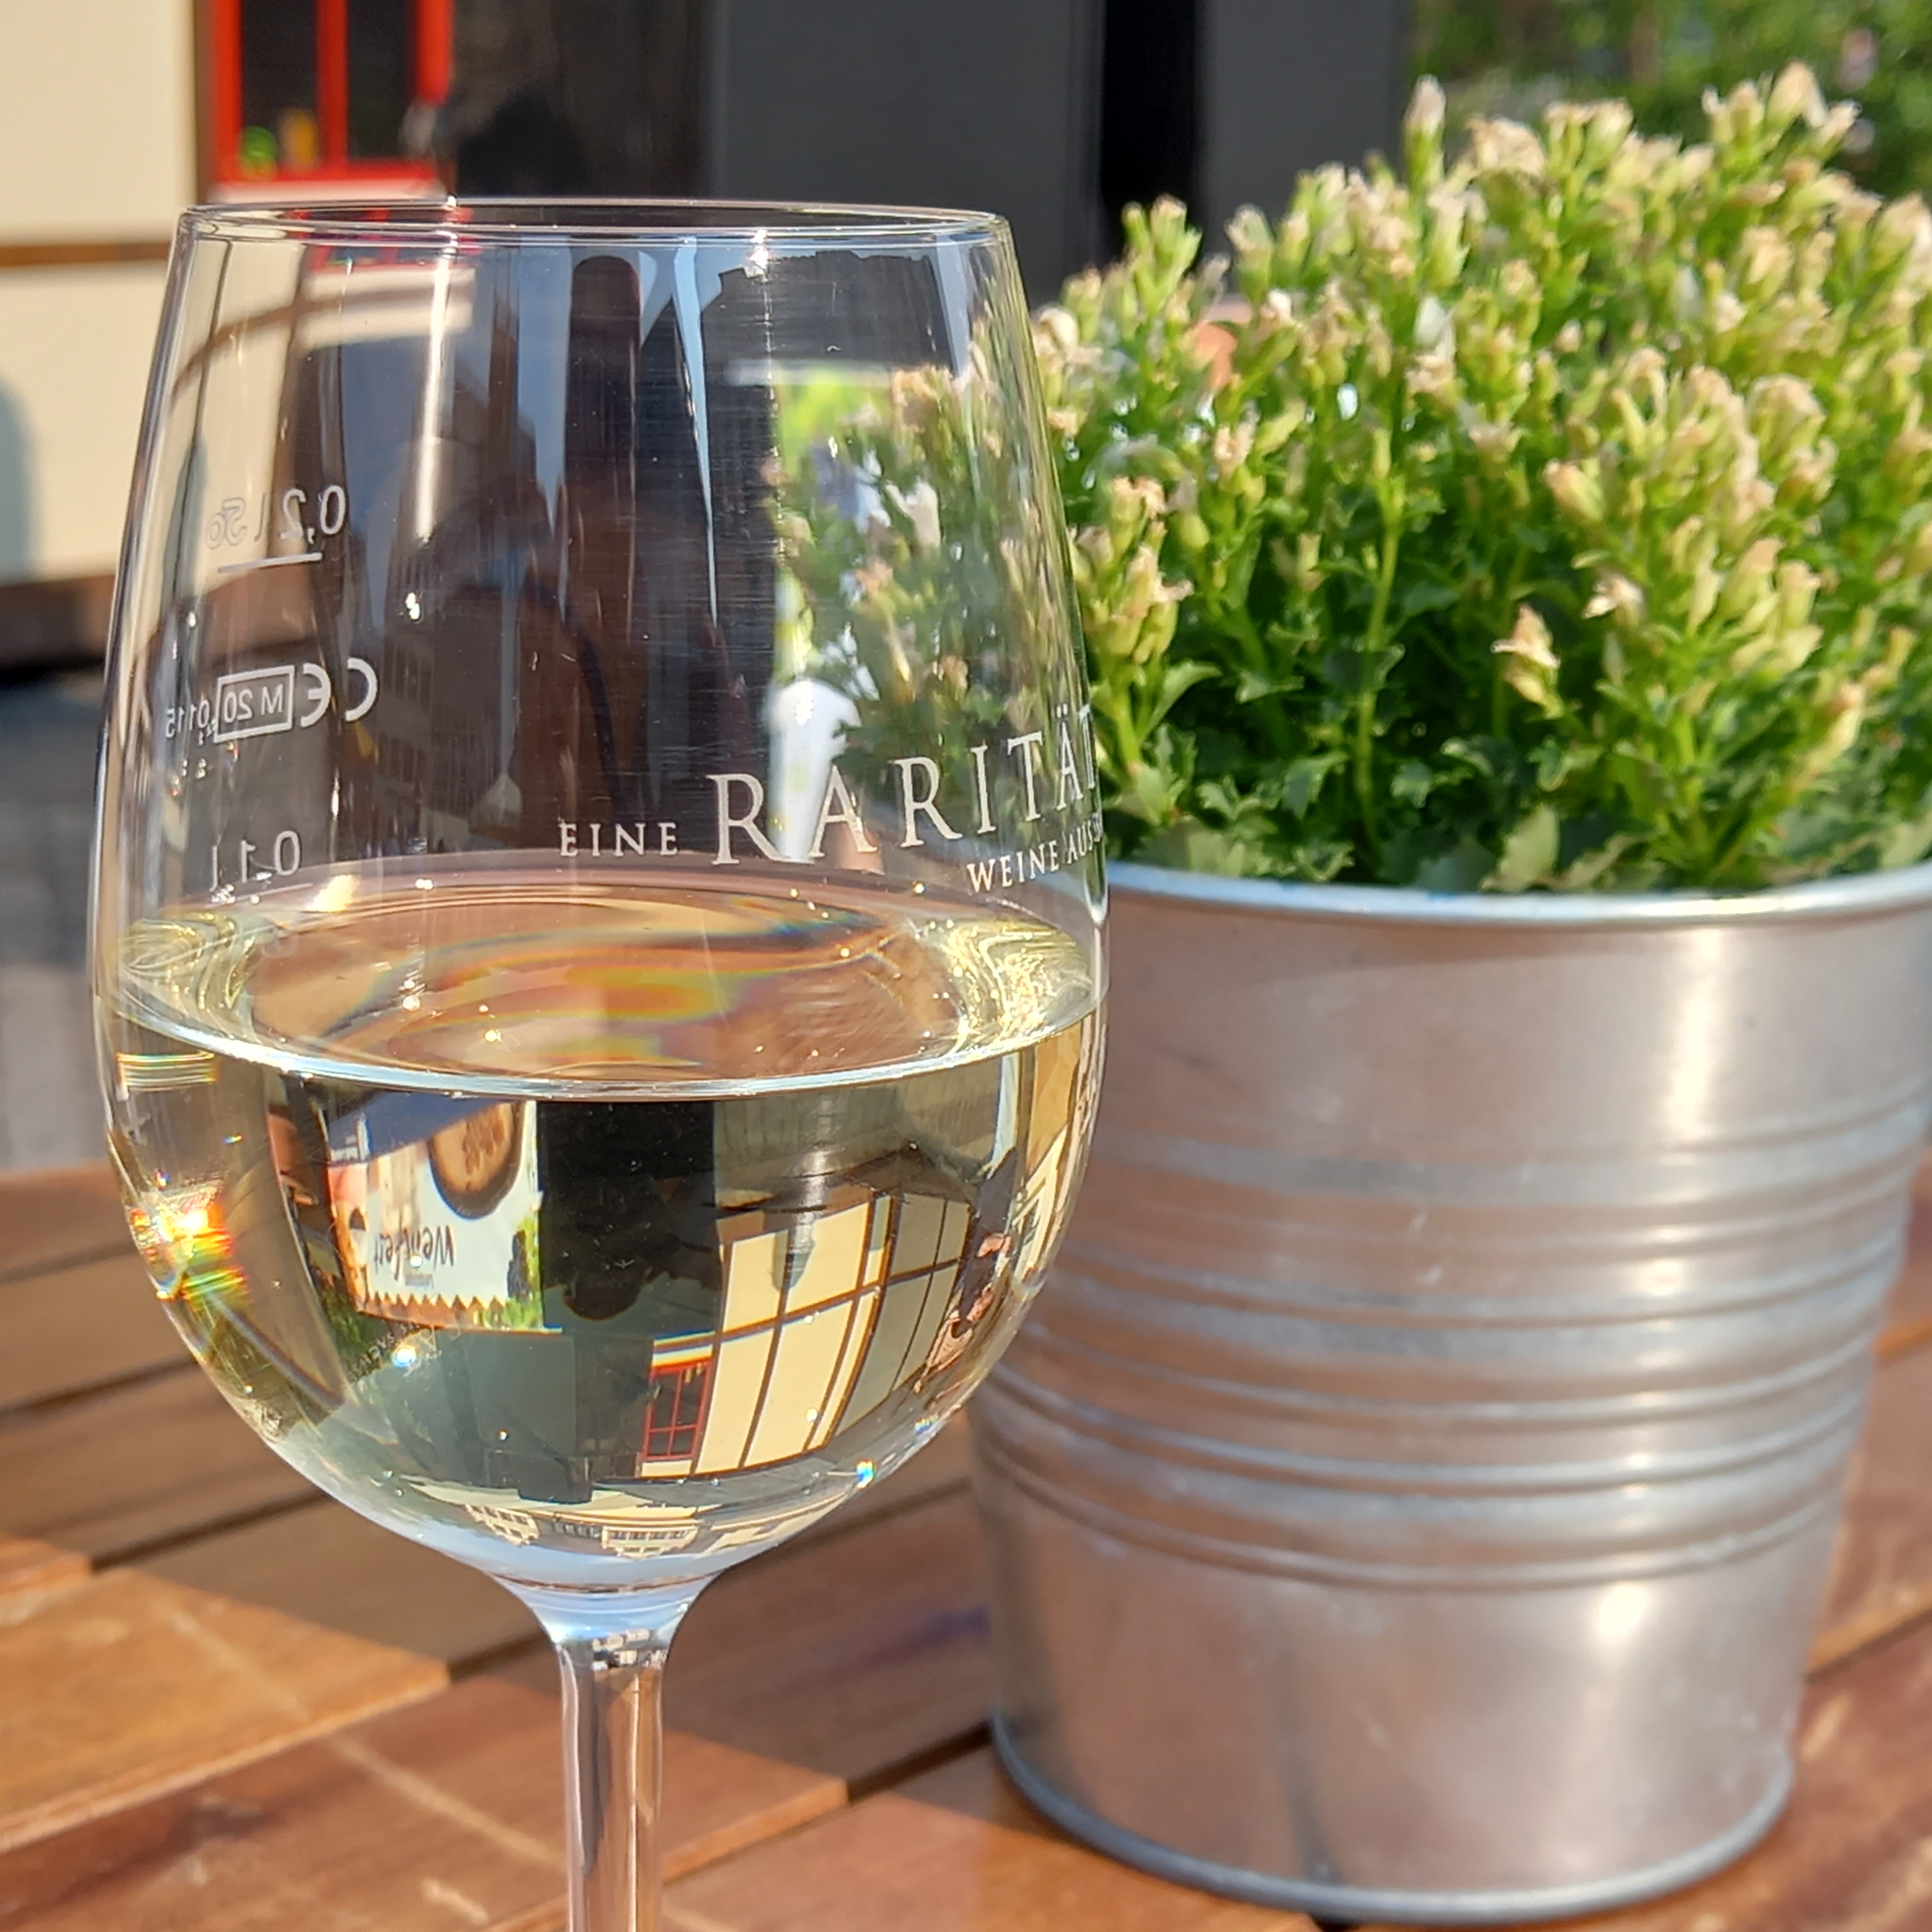   Entspannt Wein trinken | Noch bis zum Sonntag findet auf dem Markt das Leipziger Weinfest statt  